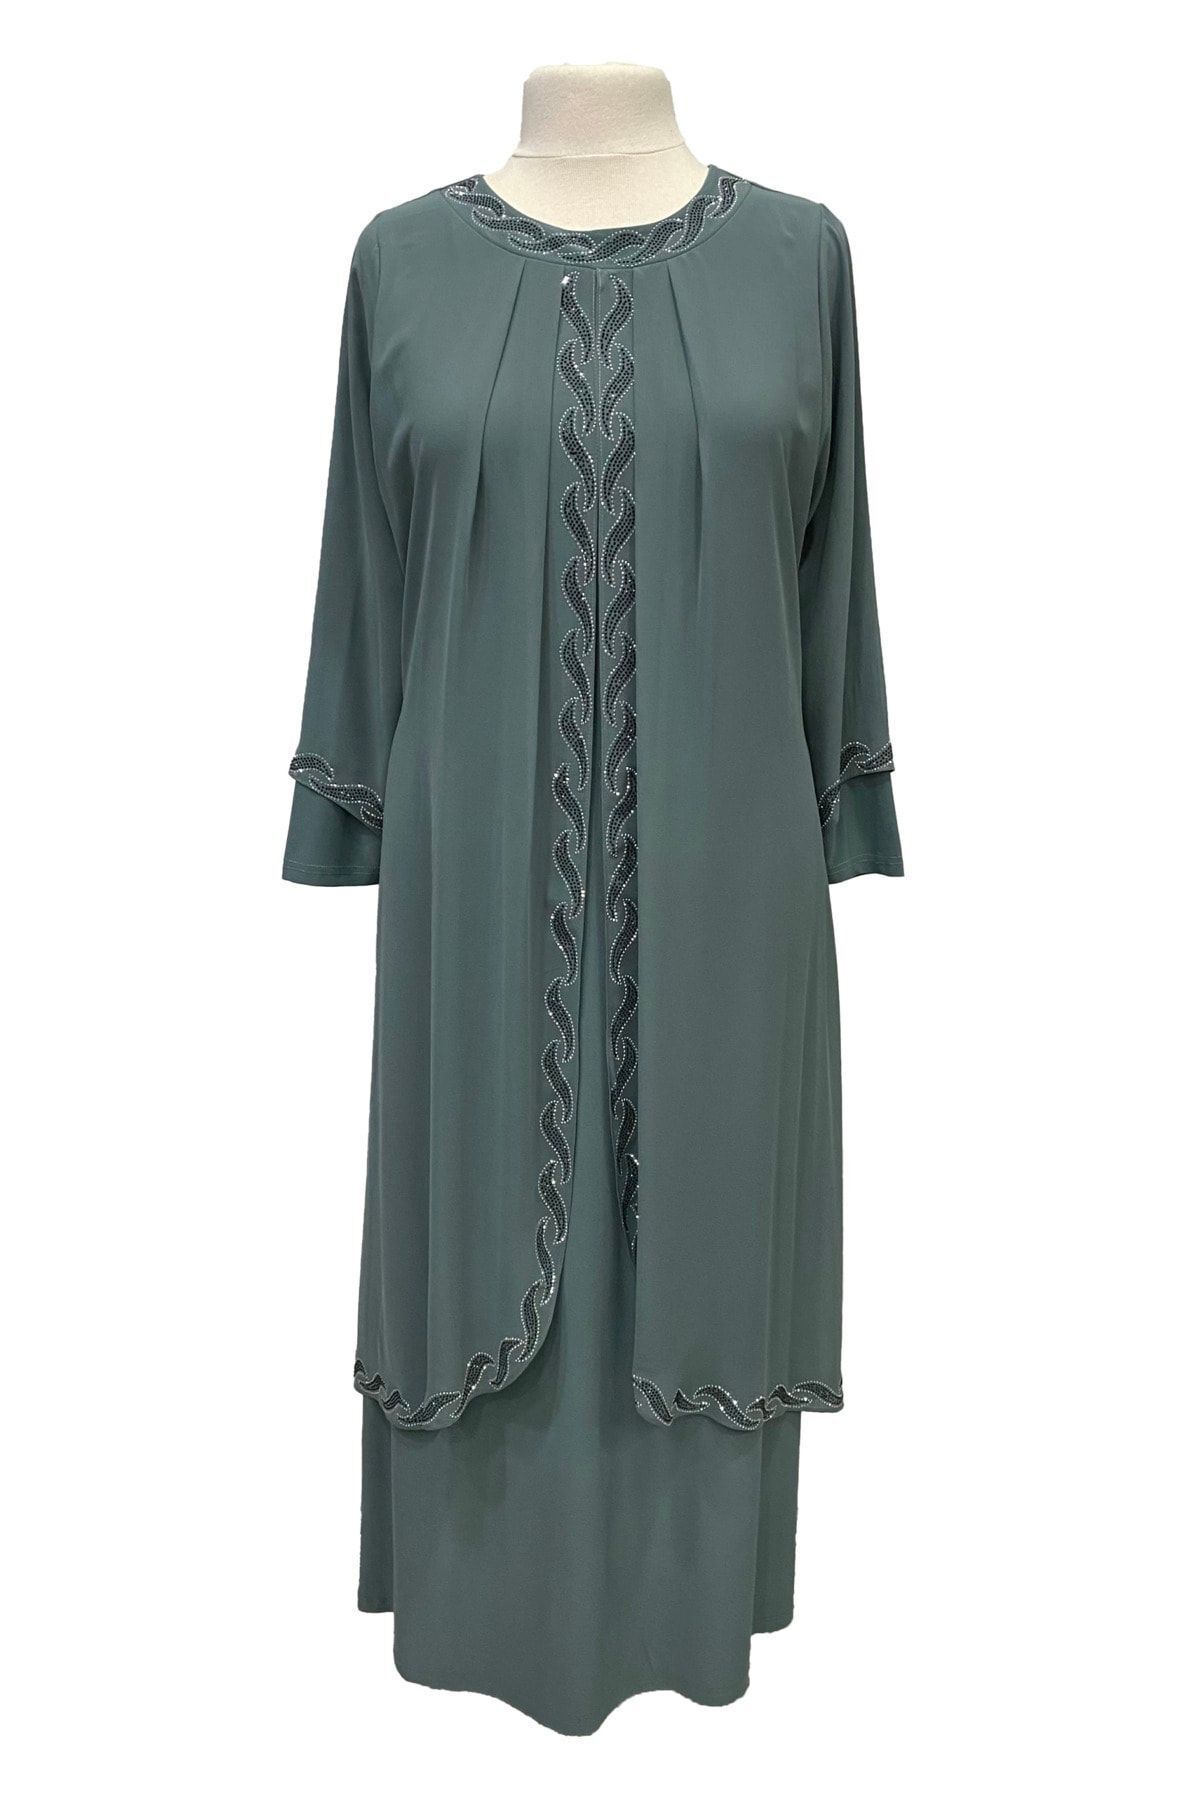 Giyinen Mağazaları Çağla Yeşil Saadet Şık Taş Işlemeli Büyük Beden Anne Abiye Elbise